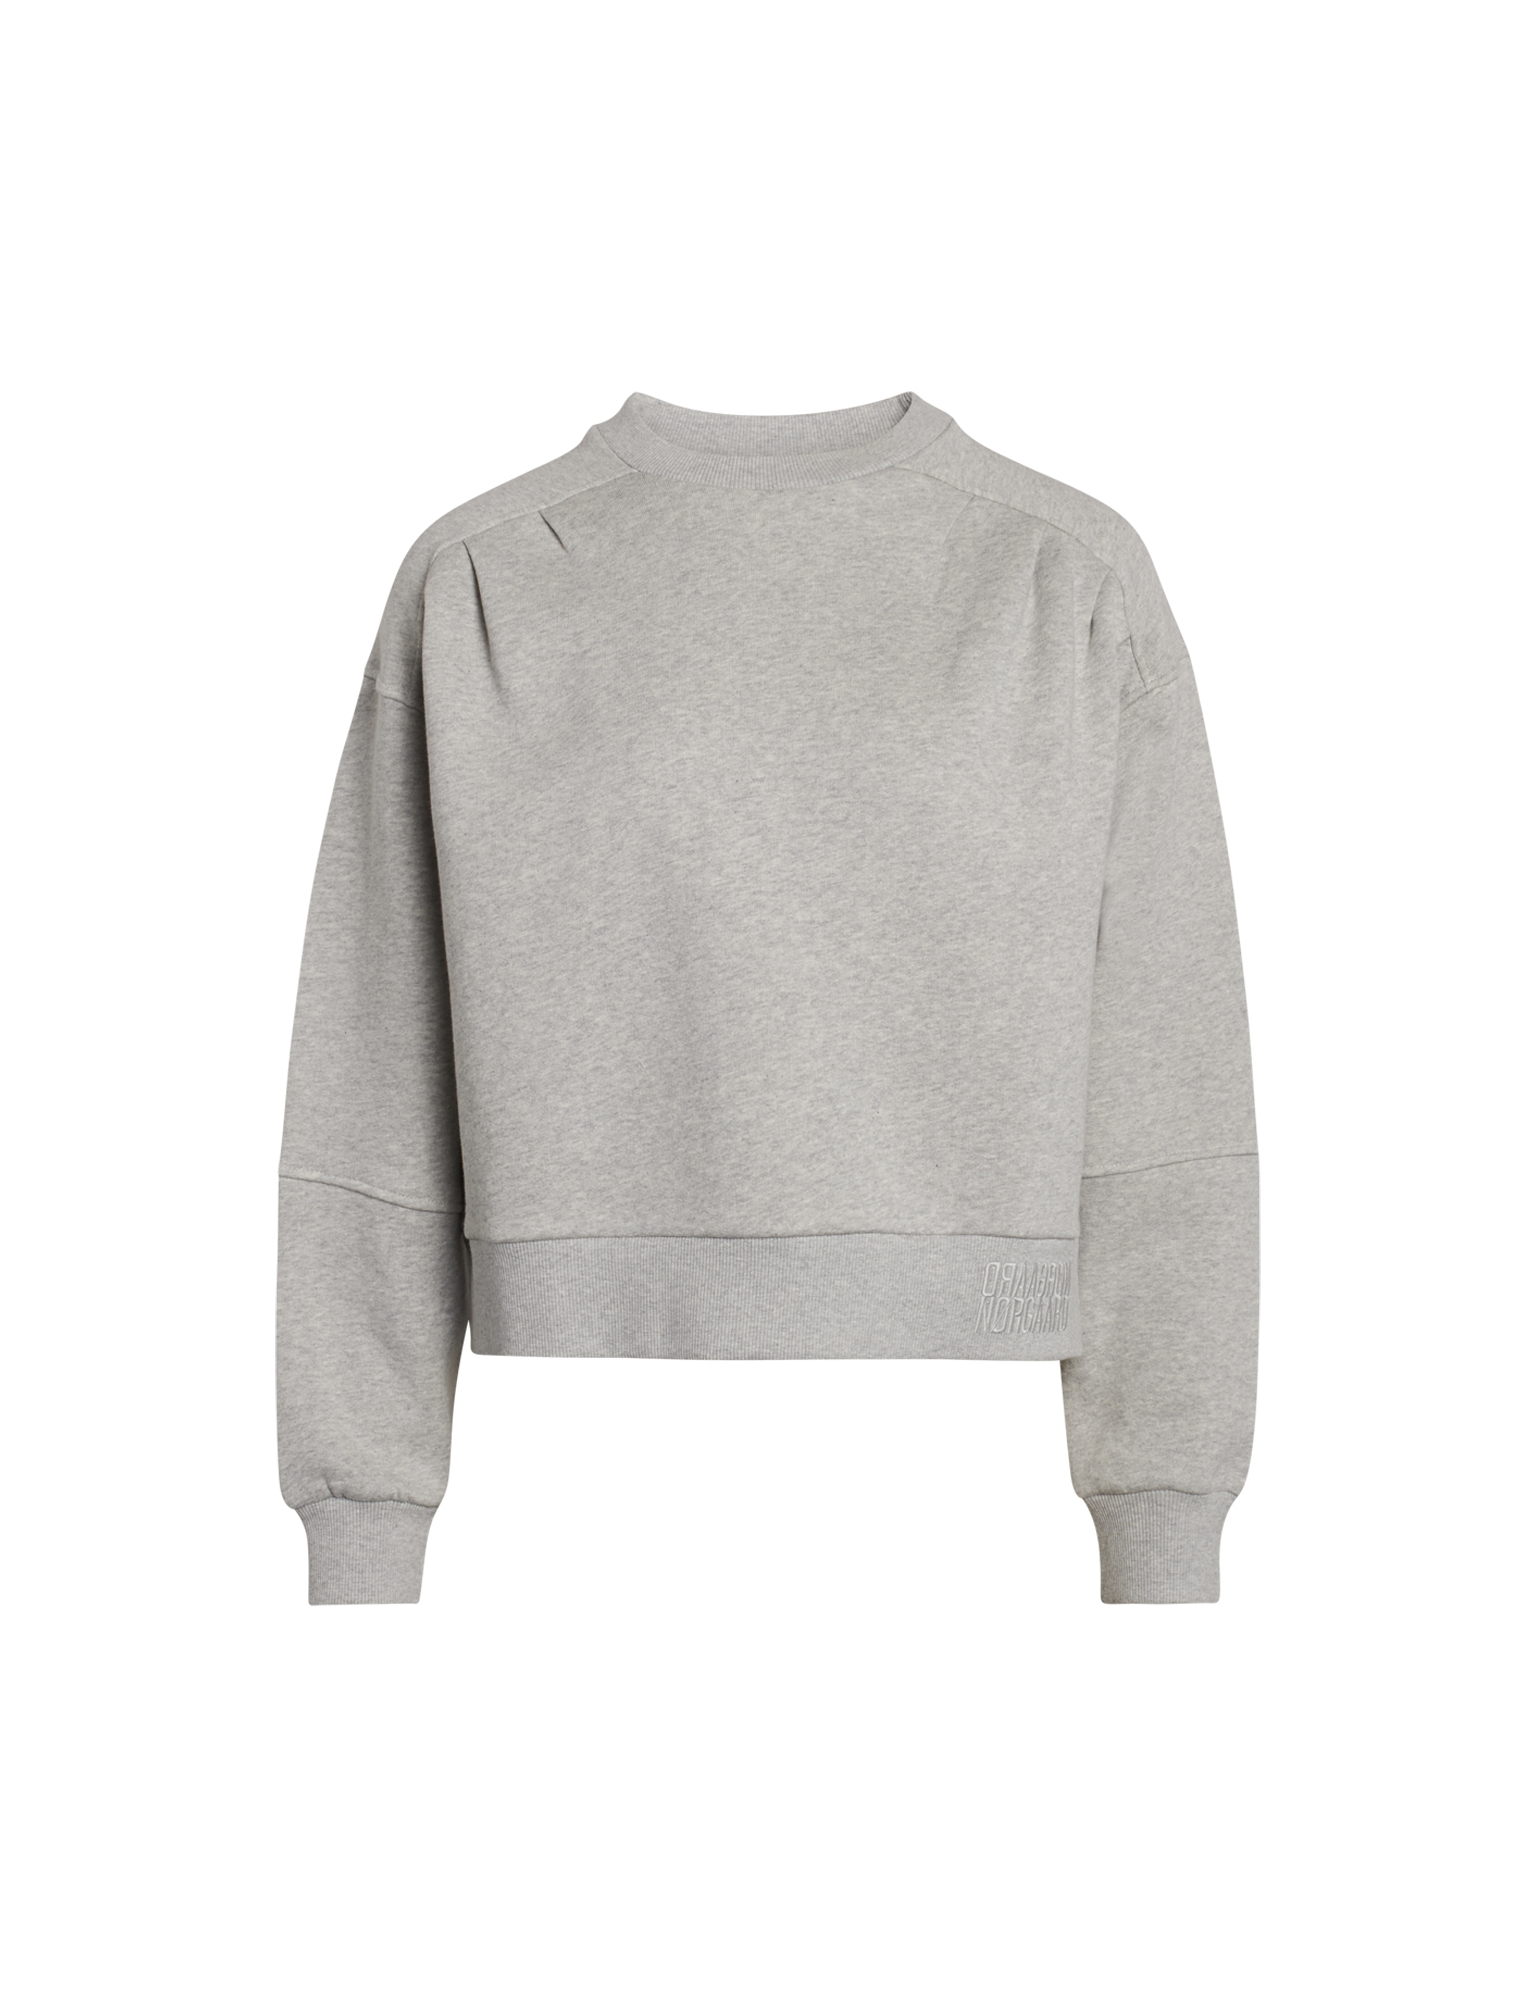 Sussie sweater medium grey melange